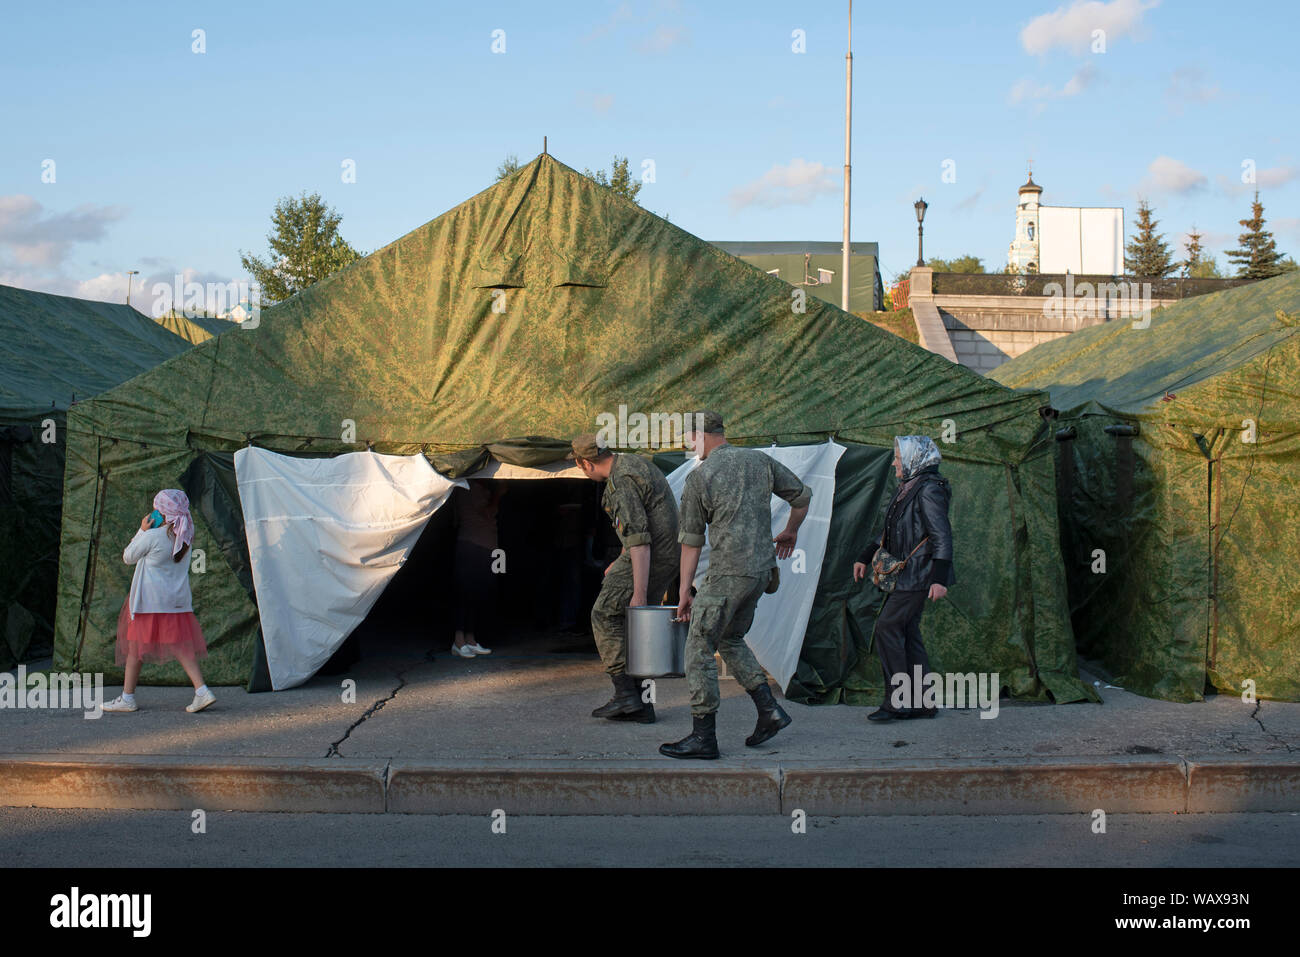 Les tentes montées par l’armée servent pour le repos des pèlerins, les soldats préparent également de quoi se nourrir avant la grande nuit de célébrat Stock Photo